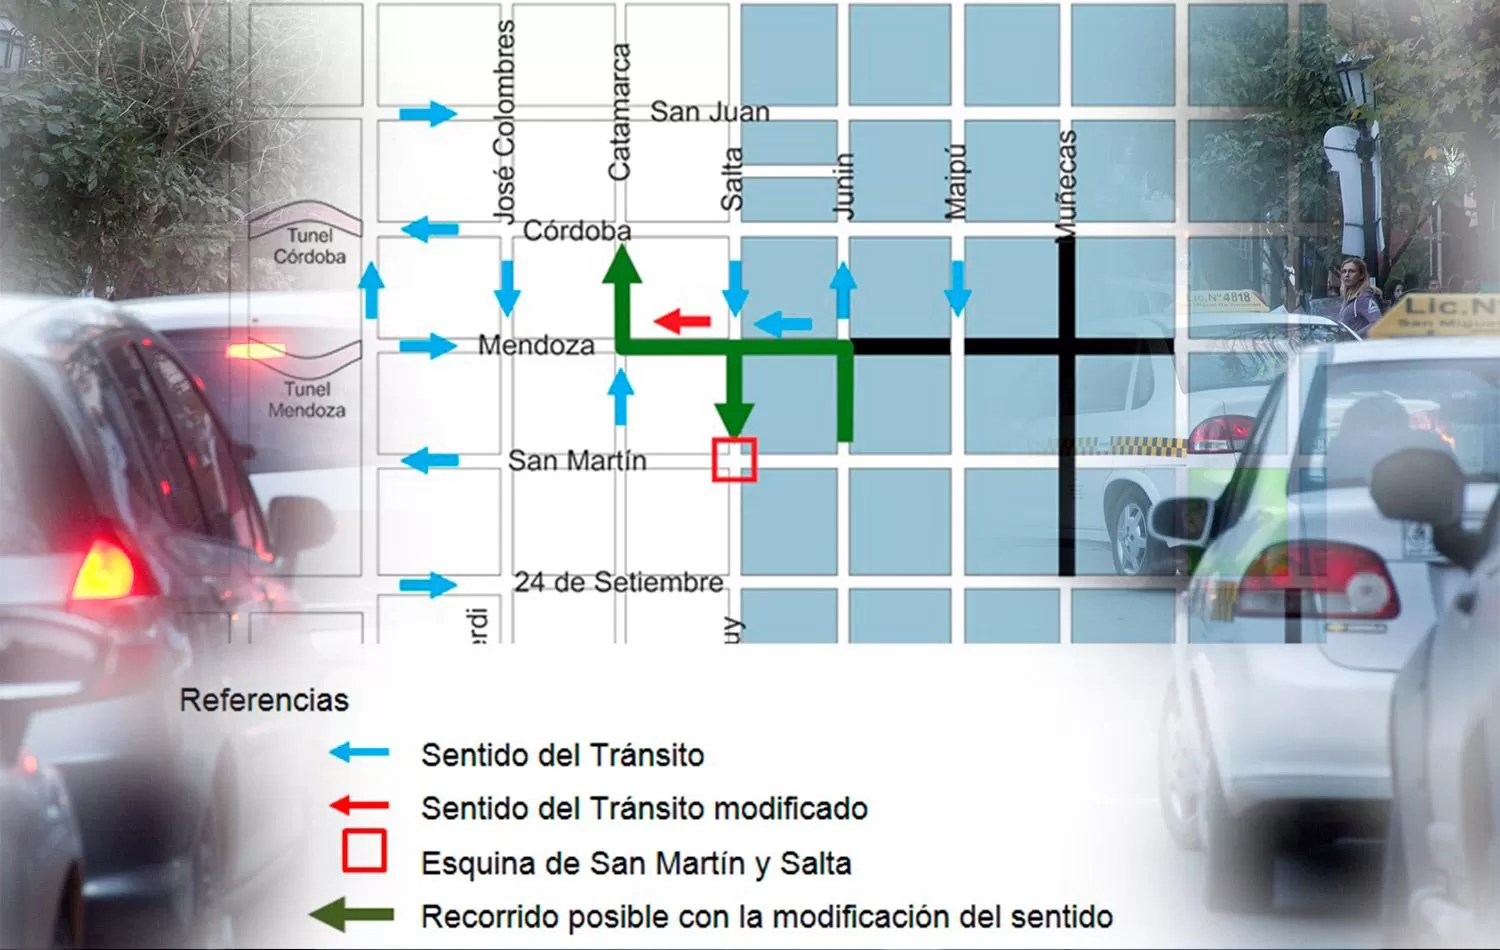 Mañana cambiará el sentido del tránsito en Mendoza al 900